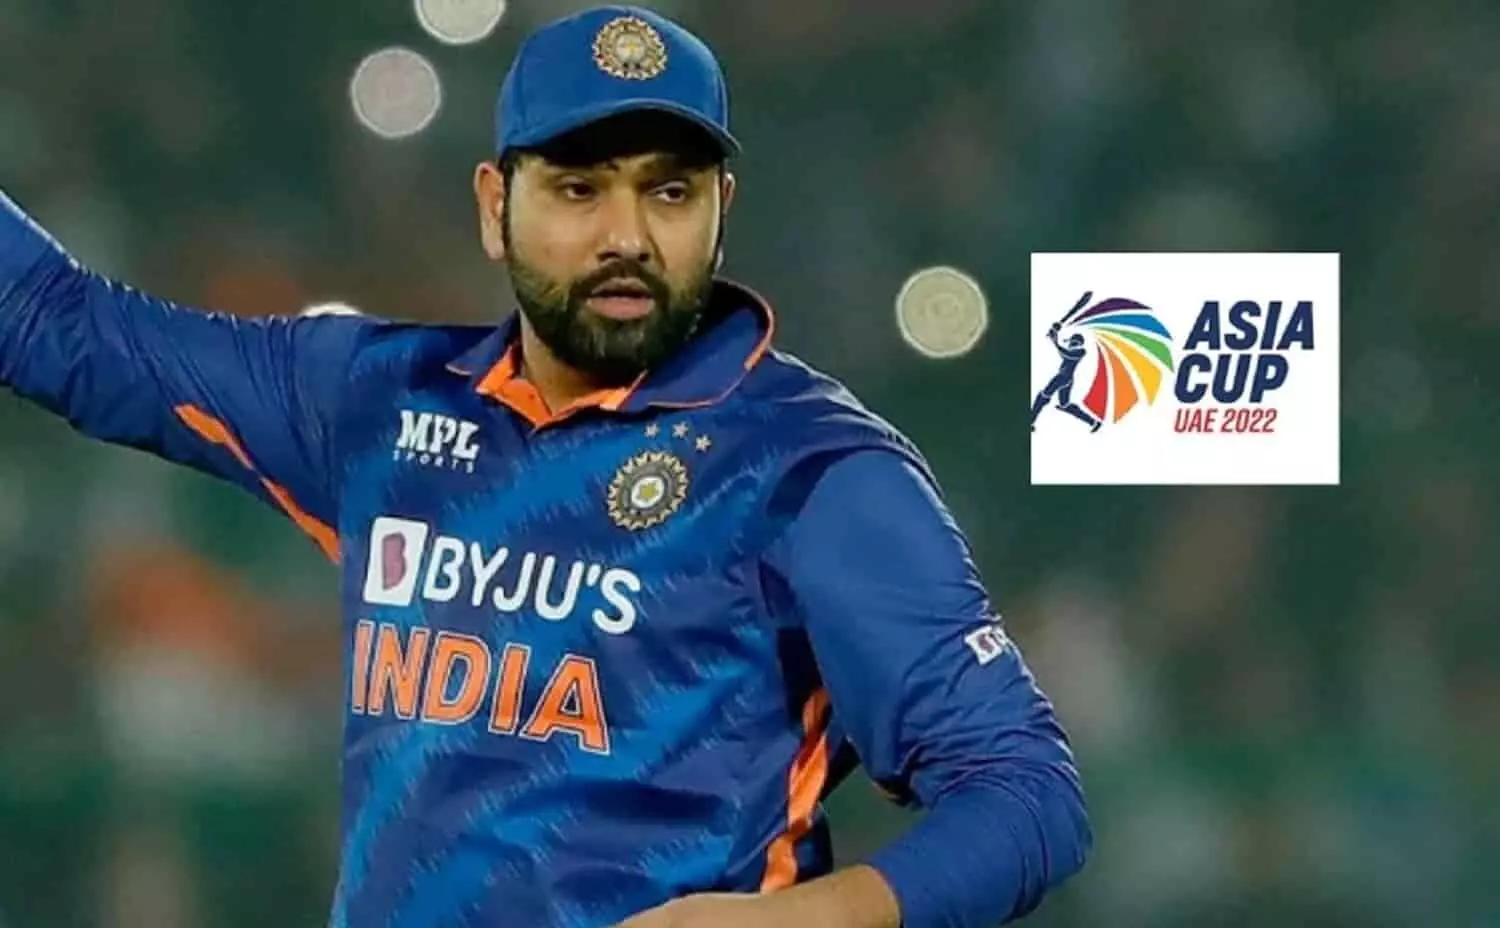 एशिया कप 2022 से लगभग बाहर हुई टीम इंडिया: श्रीलंका ने 6 विकेट से मात दी, इन शर्तों के साथ फाइनल में पहुंच सकता है भारत